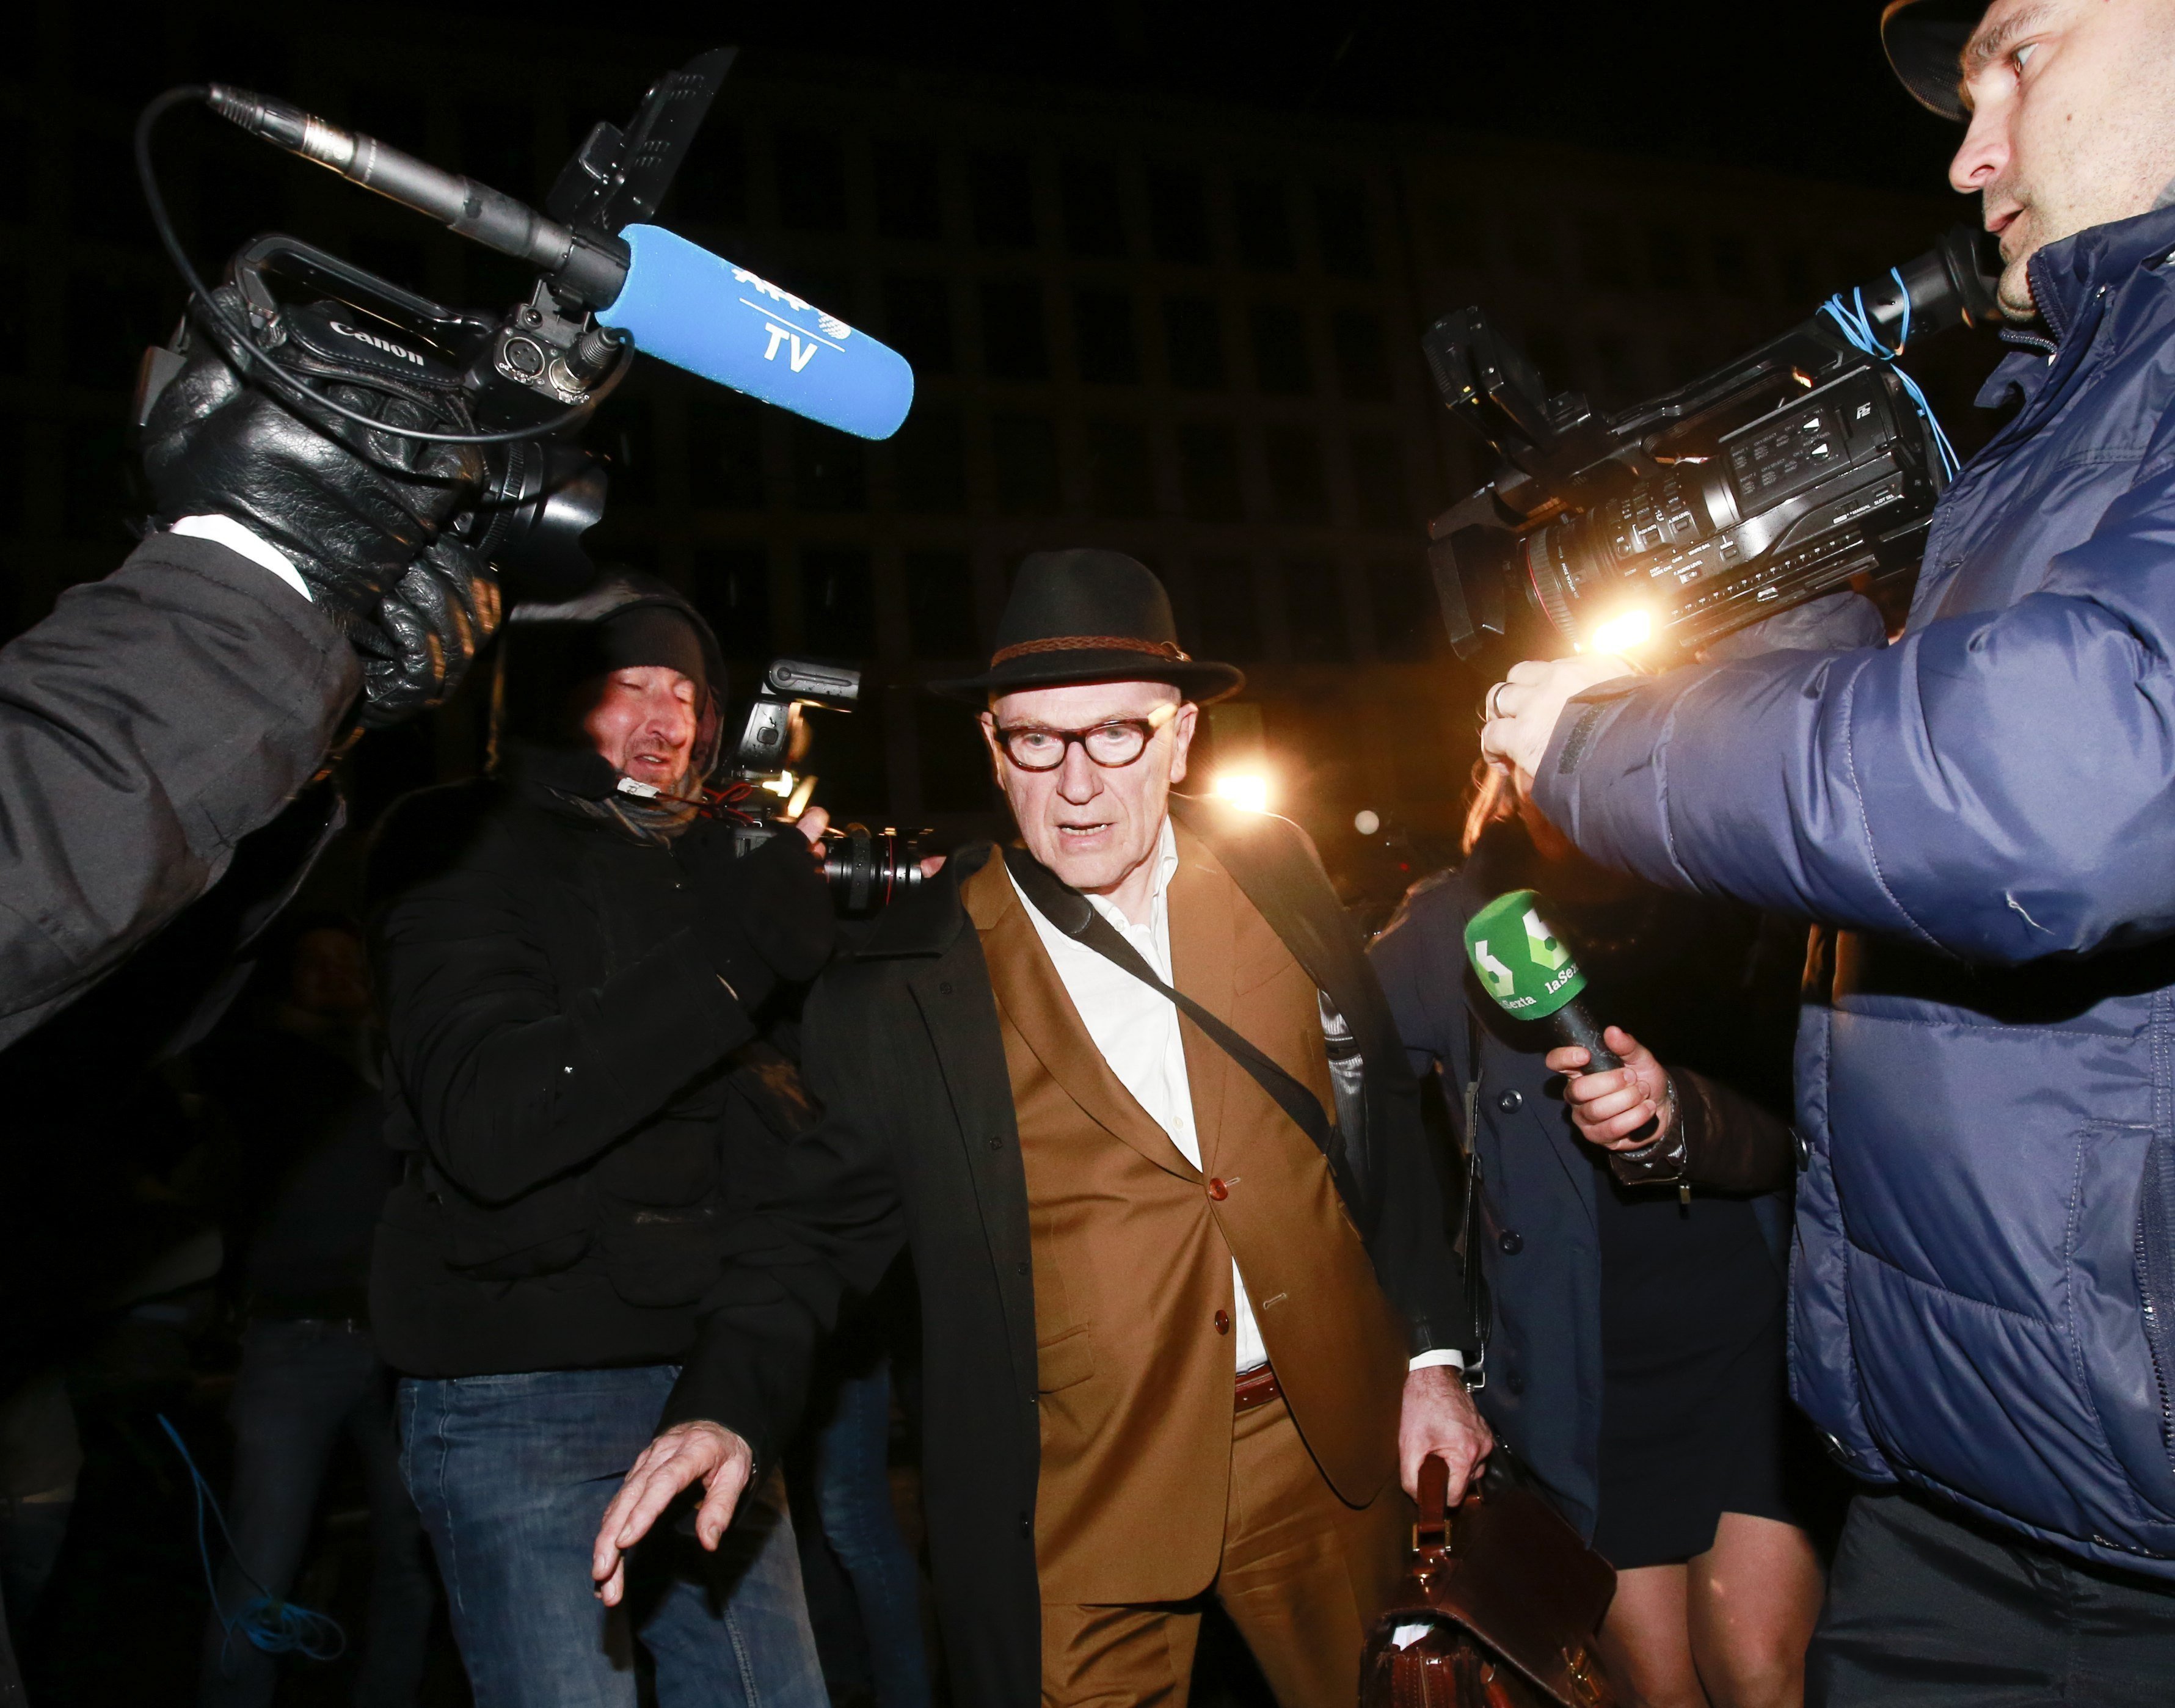 España sabía que Bélgica no extraditaría a Puigdemont, según su abogado